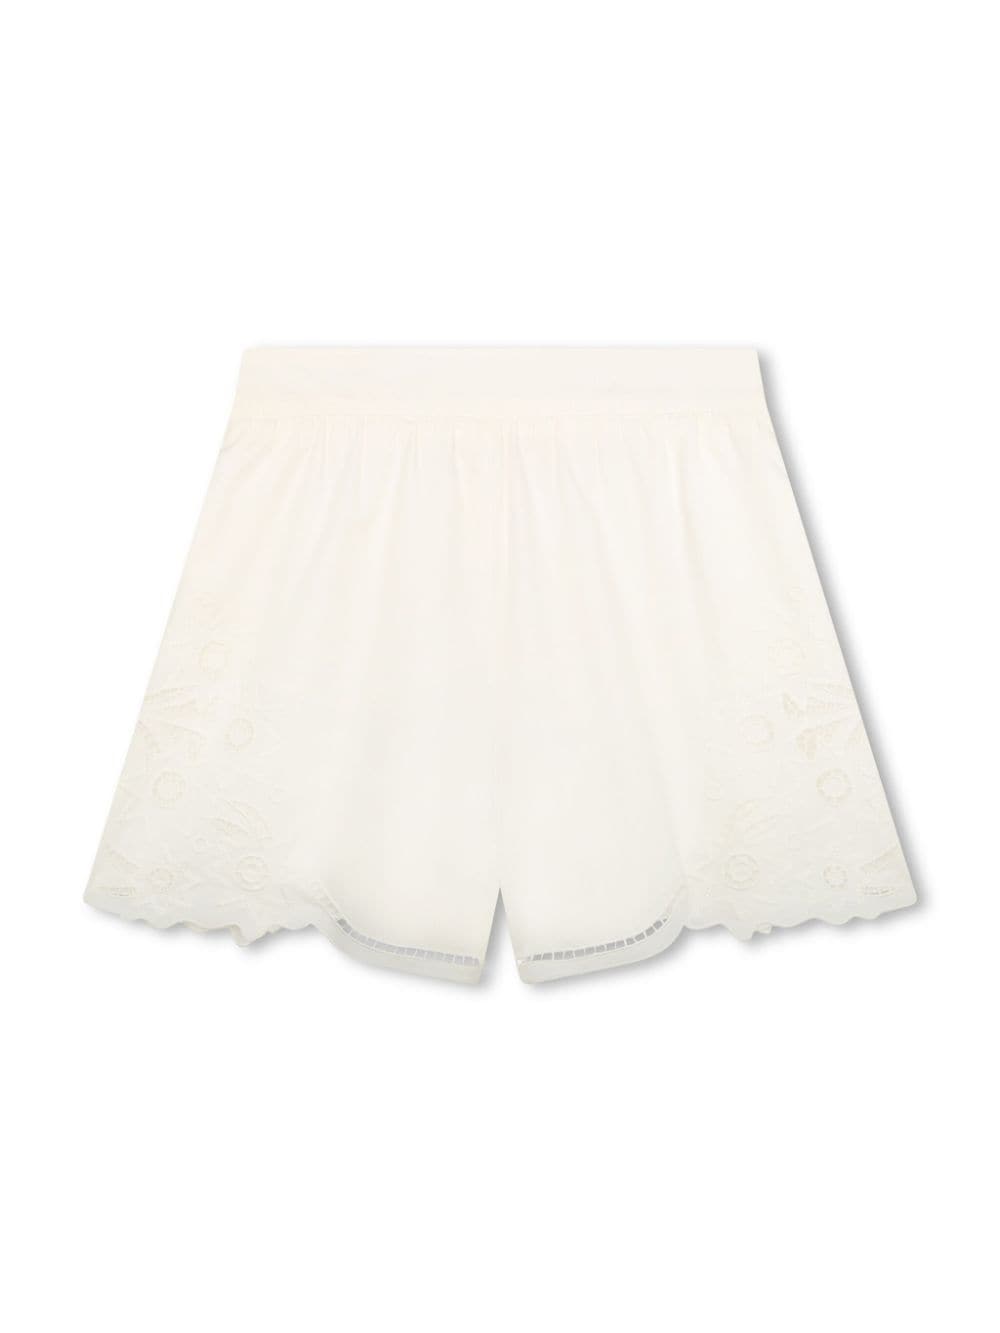 Chloé Kids' 刺绣设计棉短裤 In White